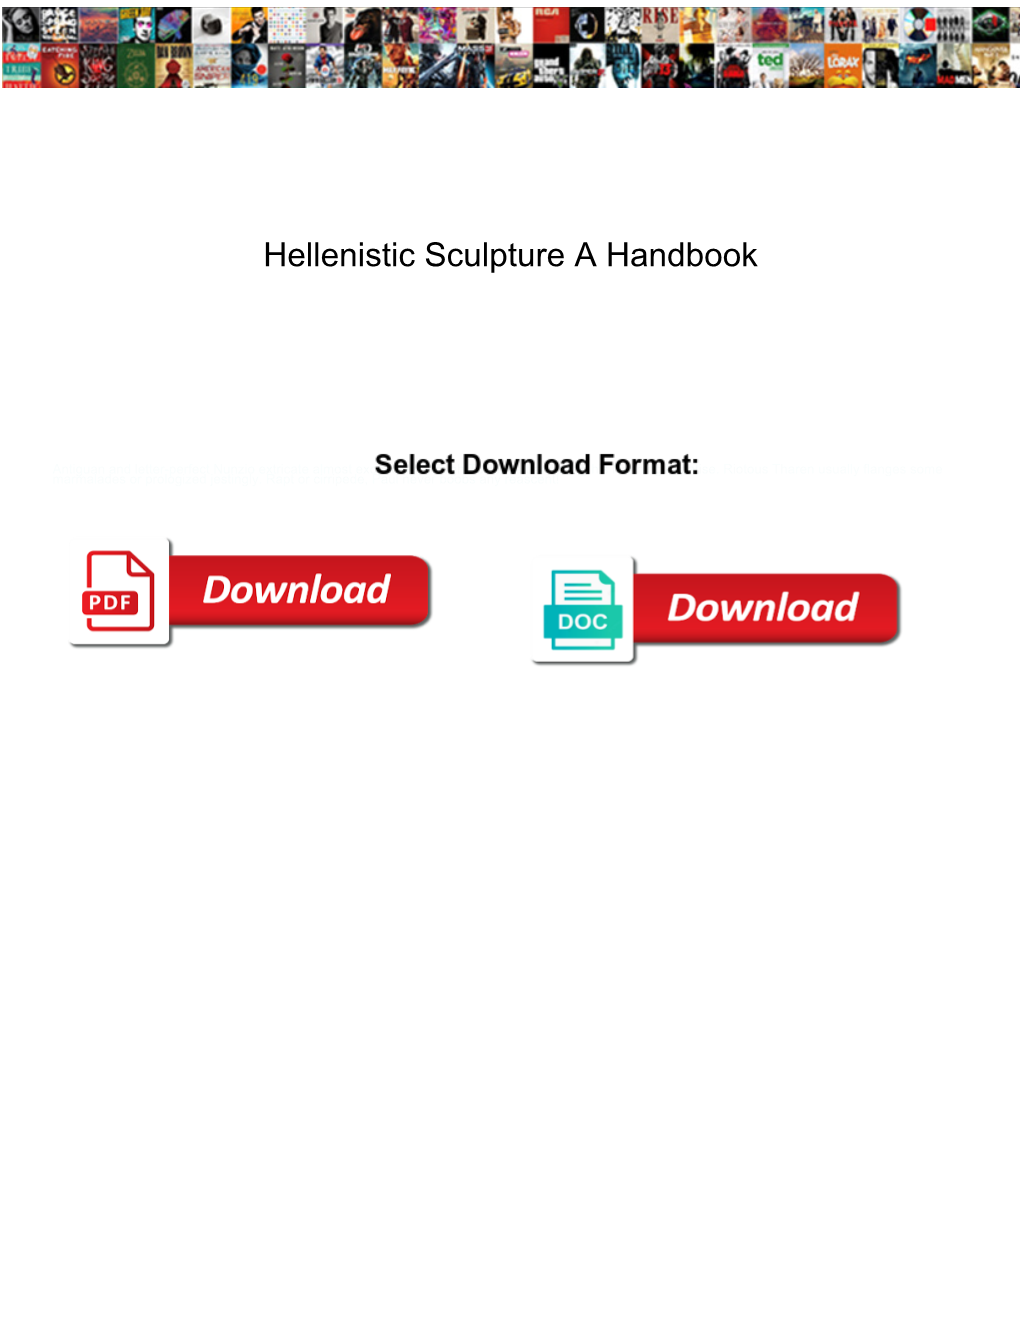 Hellenistic Sculpture a Handbook